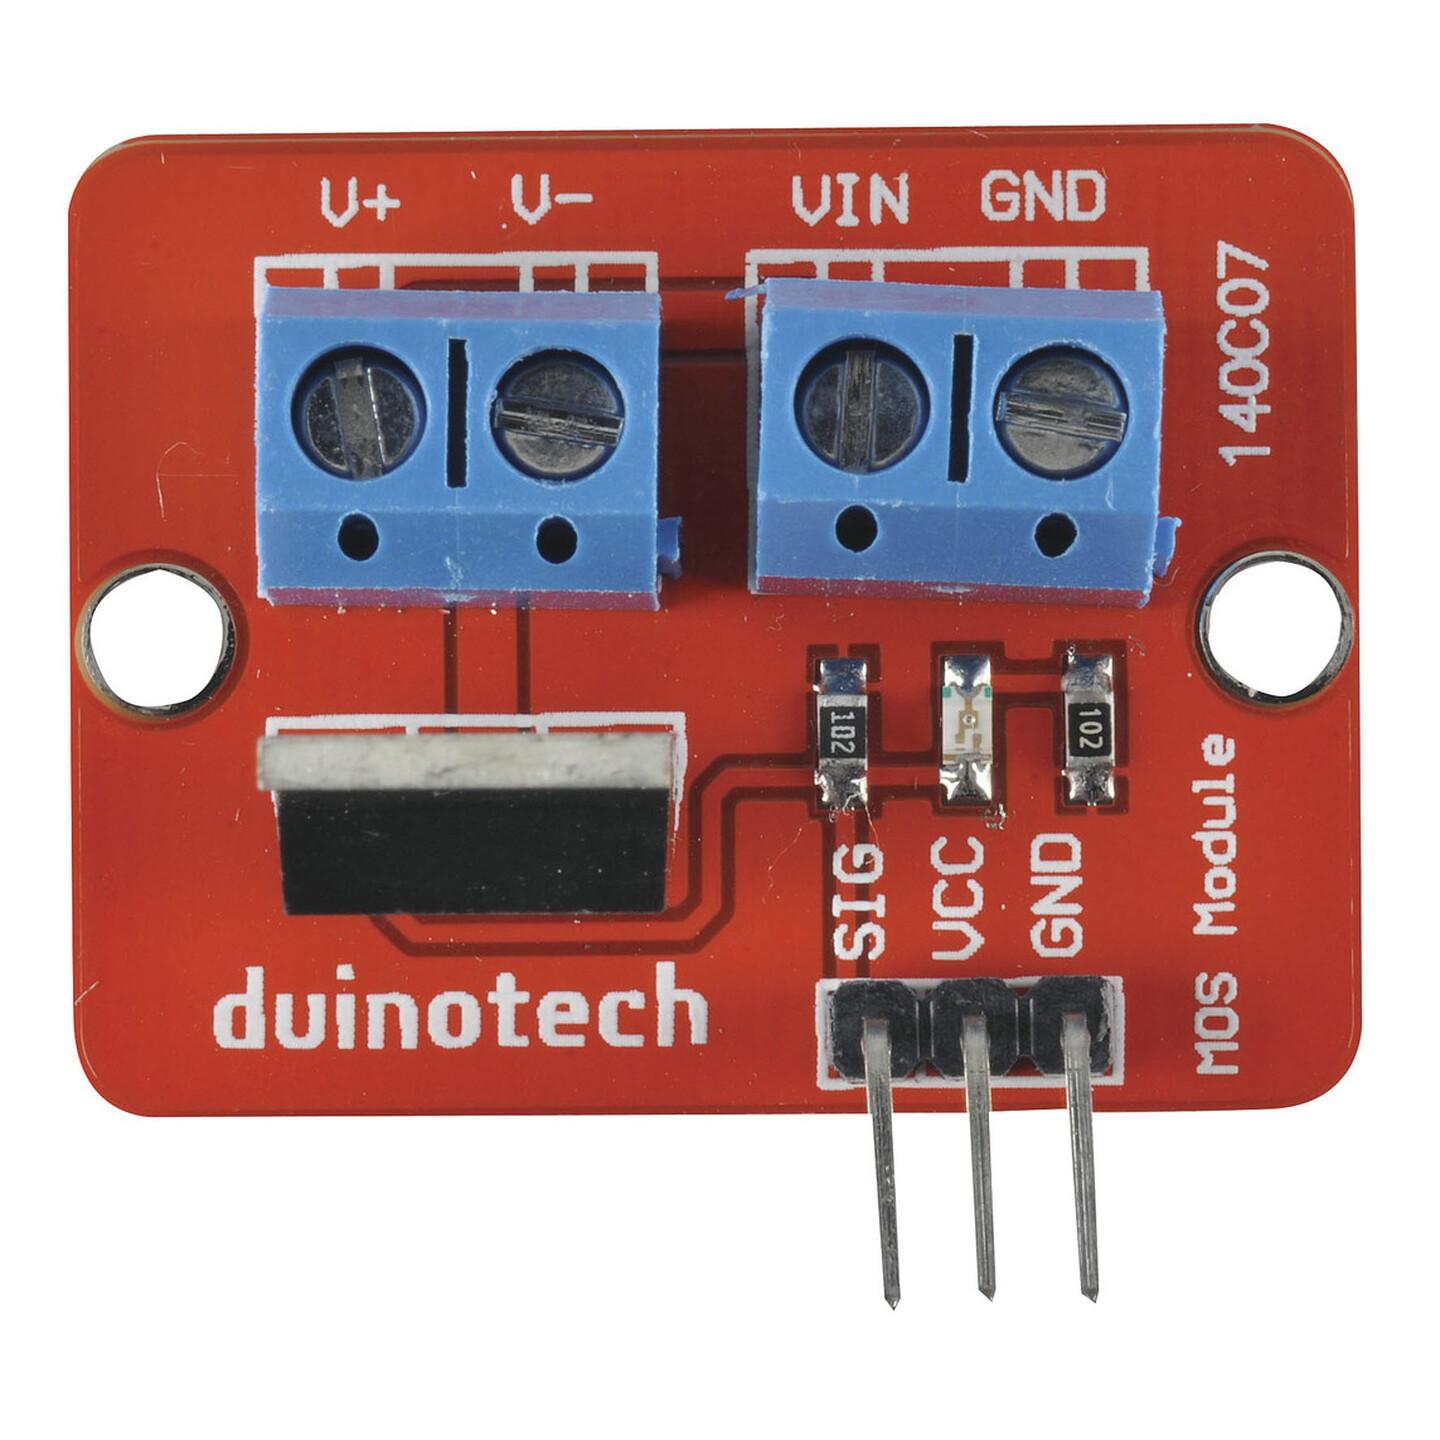 Duinotech Arduino Compatible 24V 5A MOS Driver Module